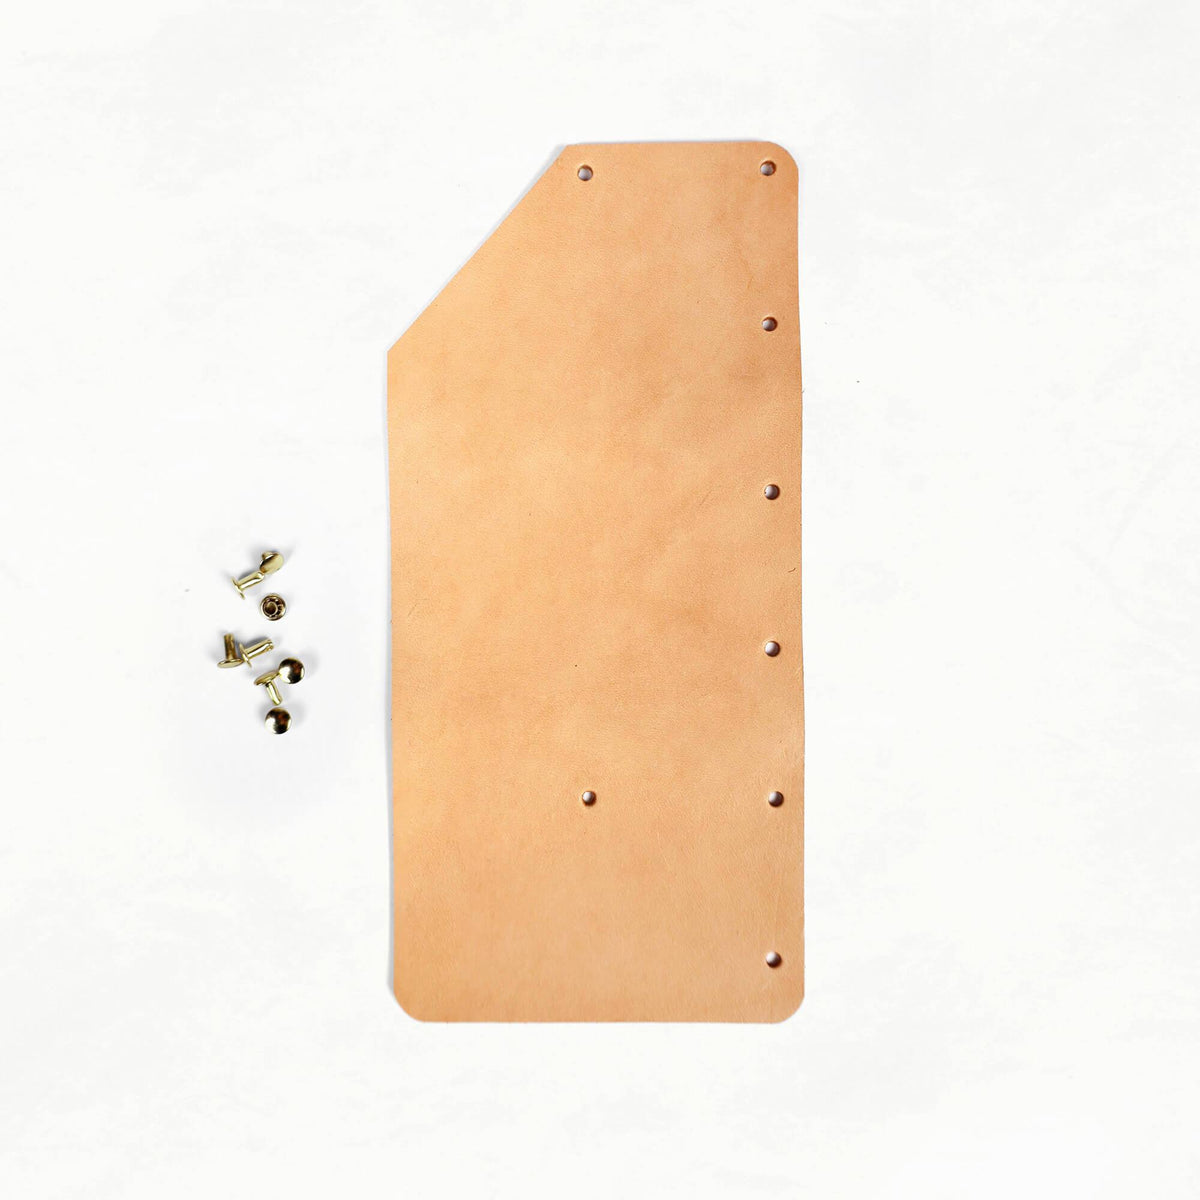 Marbled Leather Card Holder Kit (Seconds): 3-Pack Bundle